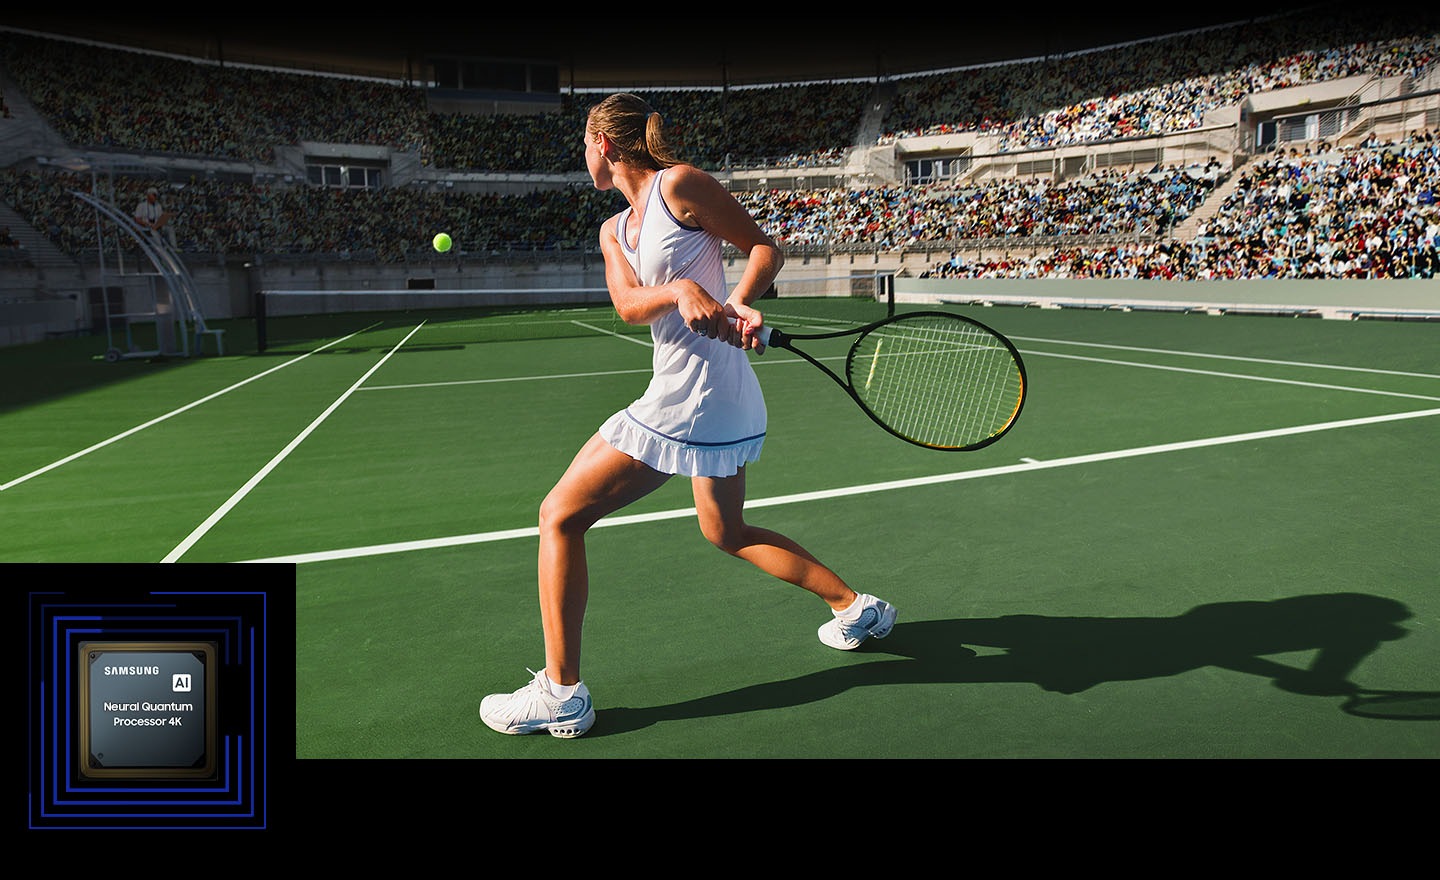 Kobieta gra w tenisa przed dużym tłumem. Neuralny procesor kwantowy 4K przetwarza wiele obiektów wyświetlanych i ulepsza całą scenę. Neuralny procesor kwantowy 4K jest wystawiony w dolnym lewym rogu